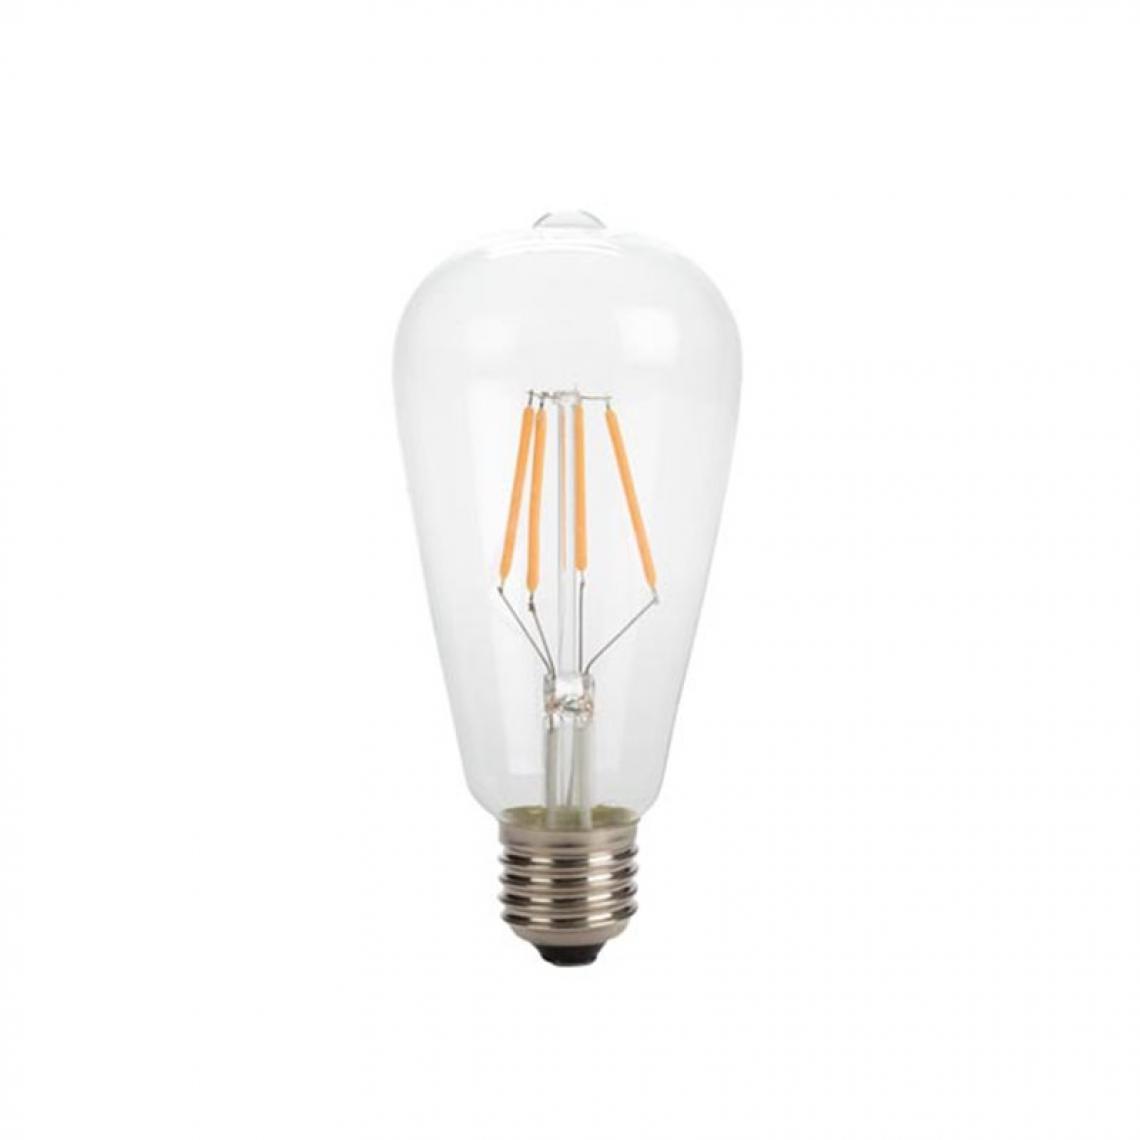 Perel - Ampoule À Filament Led - Style Rétro - St64 - 4 W - E27 - Blanc Chaud Intense - Ampoules LED